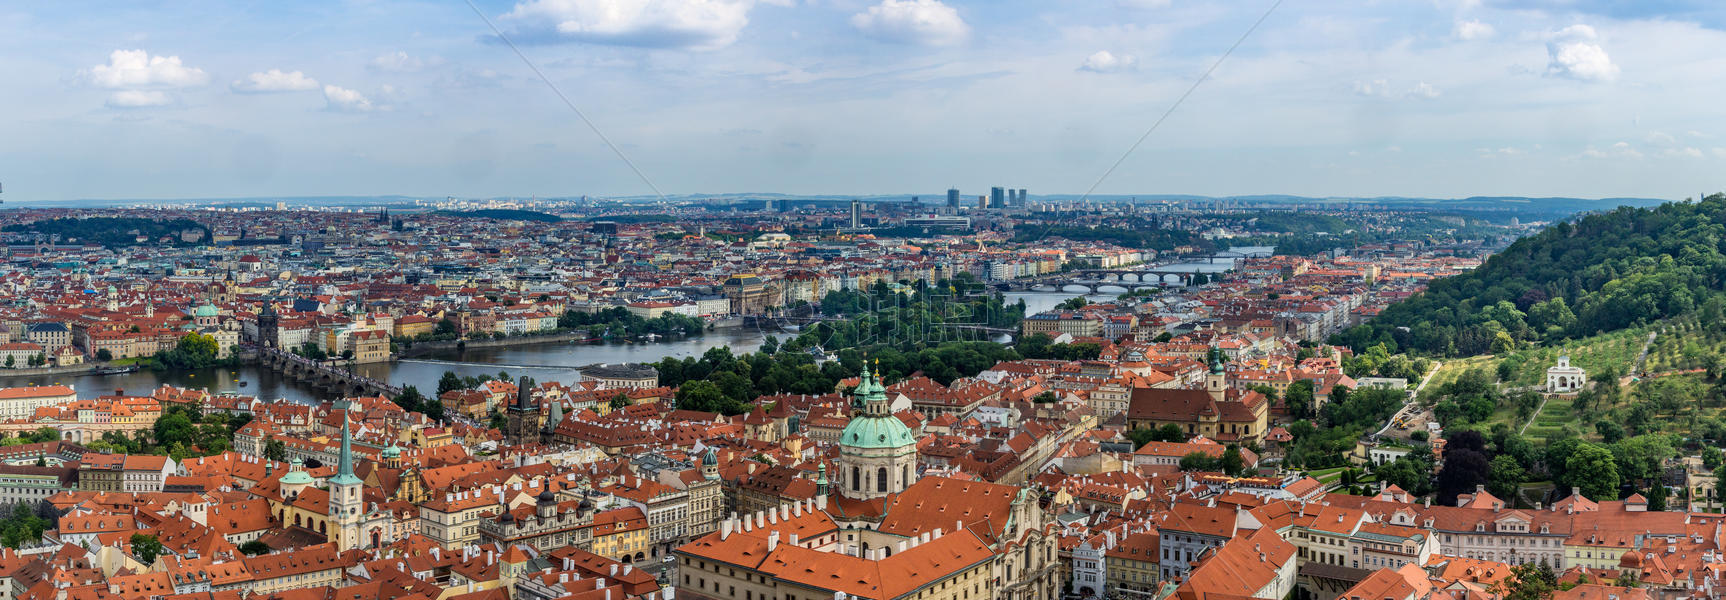 欧洲著名旅游城市布拉格全景图图片素材免费下载